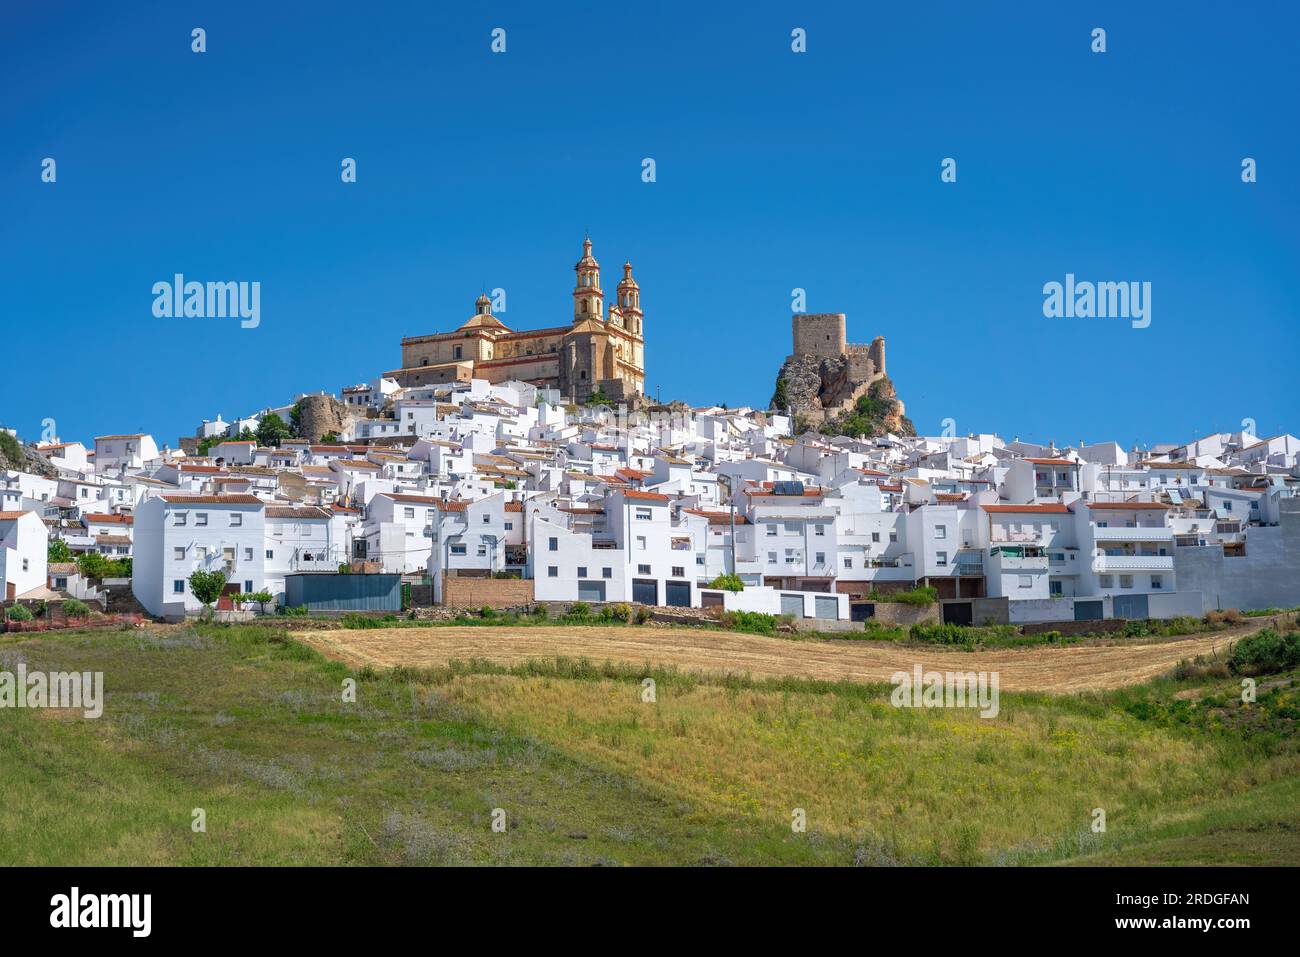 Skyline von Olvera mit Schloss und Kirche Nuestra Senora de la Encarnacion - Olvera, Andalusien, Spanien Stockfoto